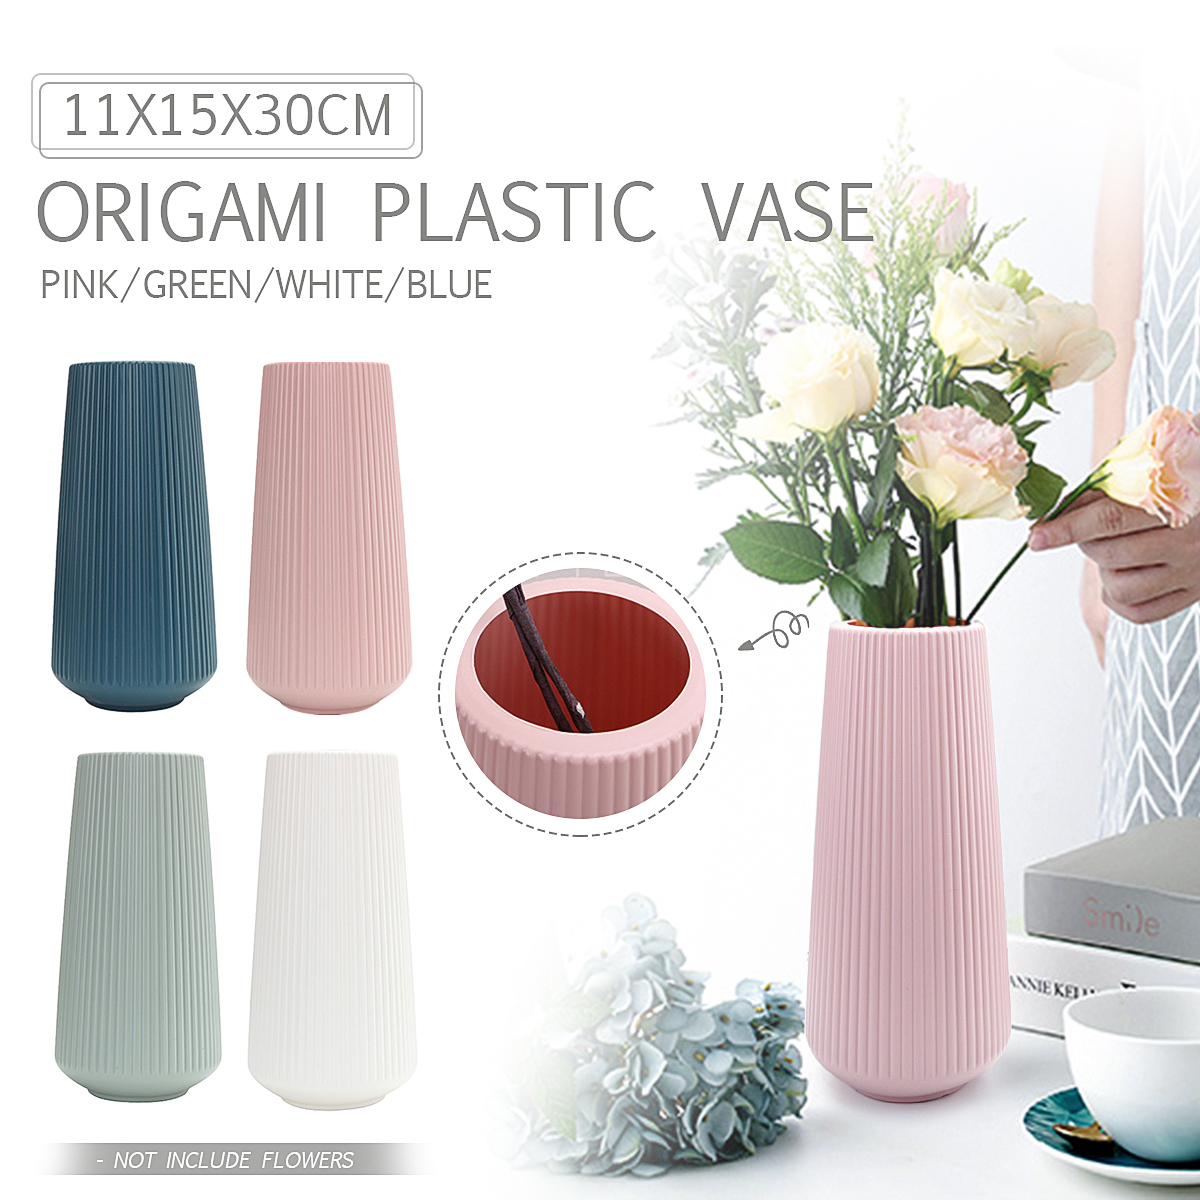 Geometric-Nordic-Origami-Imitation-Ceramic-Flower-Pot-Indoor-Dining-Room-Office-Decor-1628436-1